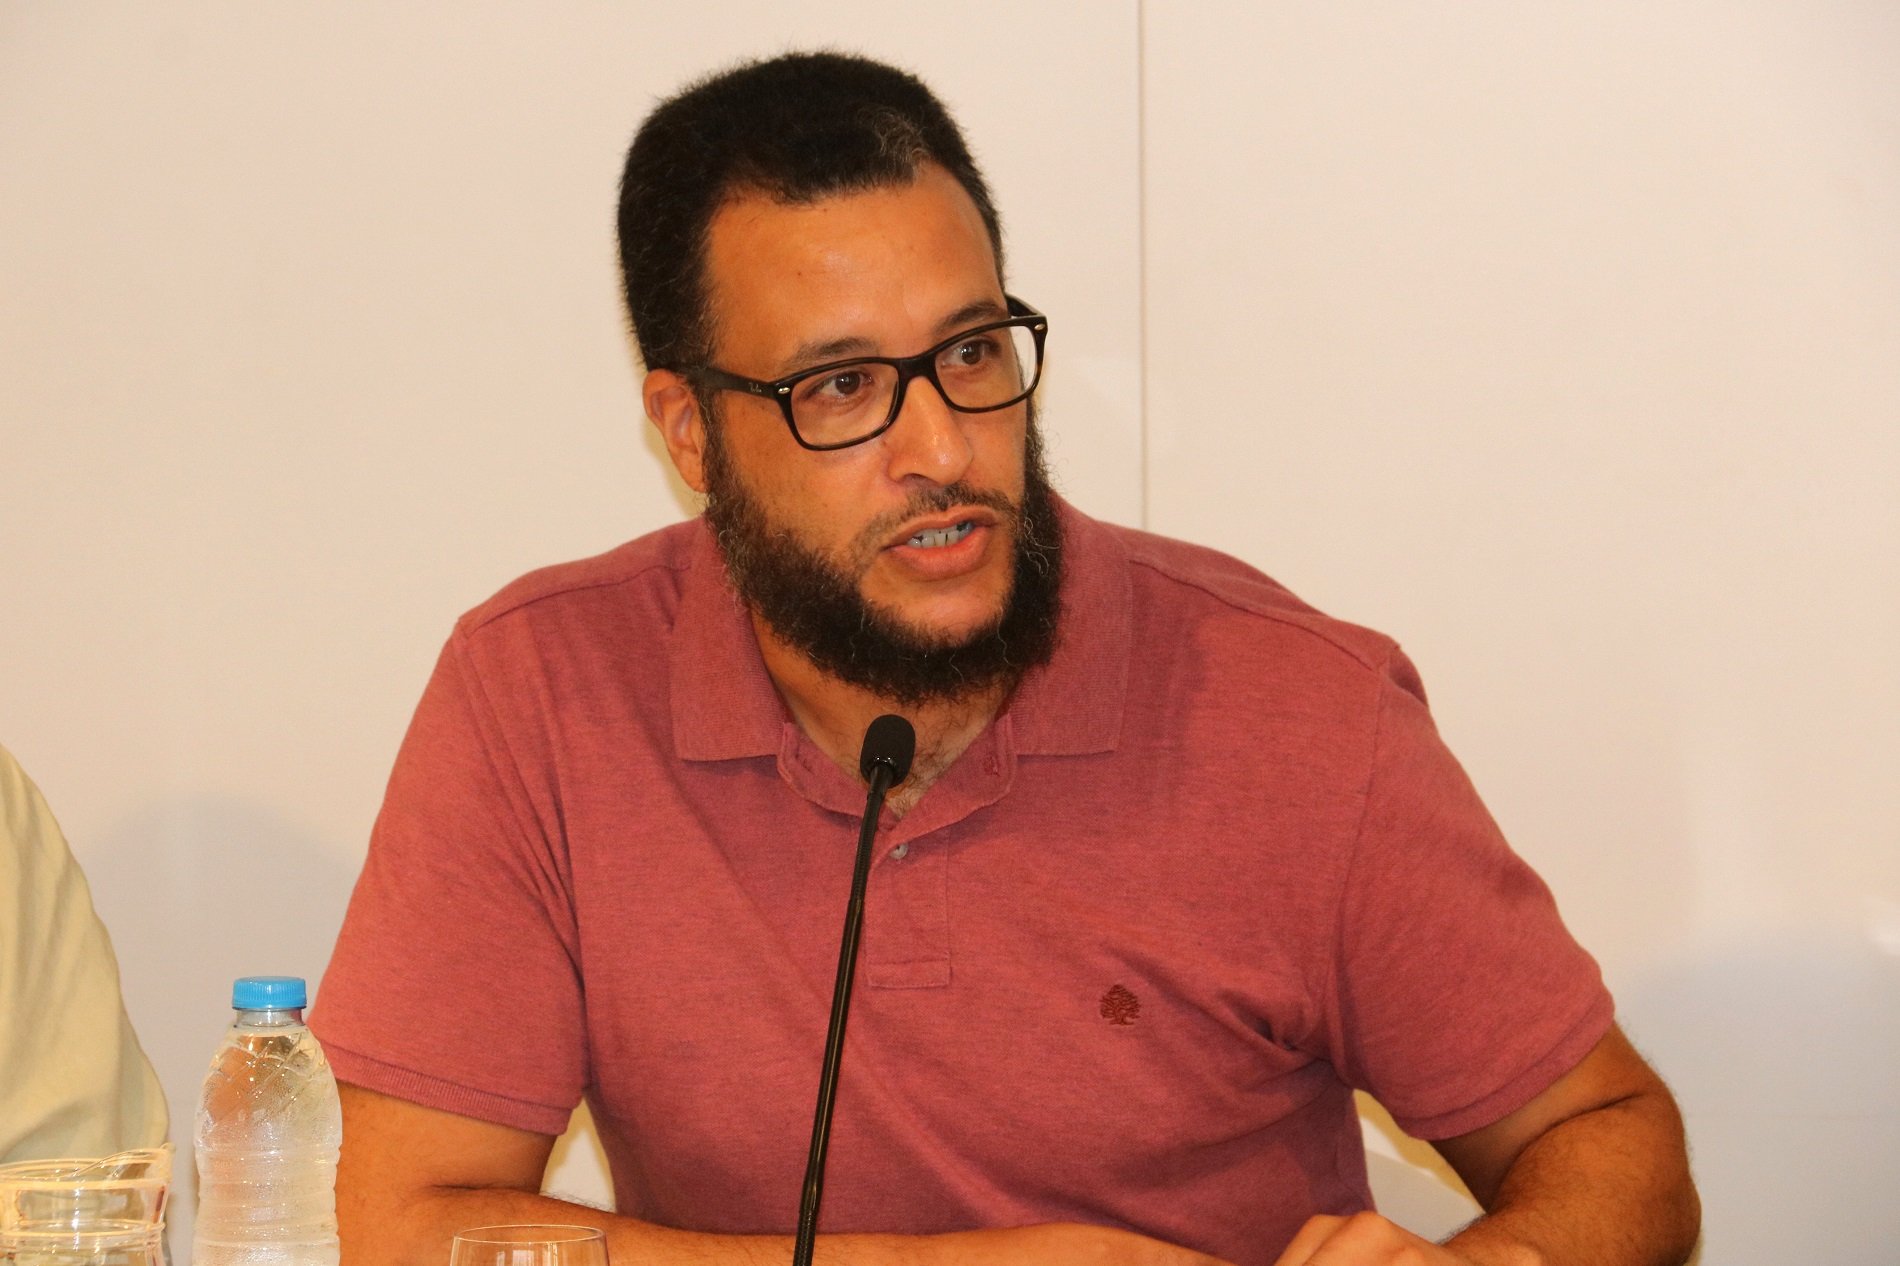 El jutge no atura l'expulsió de Mohamed Saïd Badaoui i l'envia al CIE de Barcelona